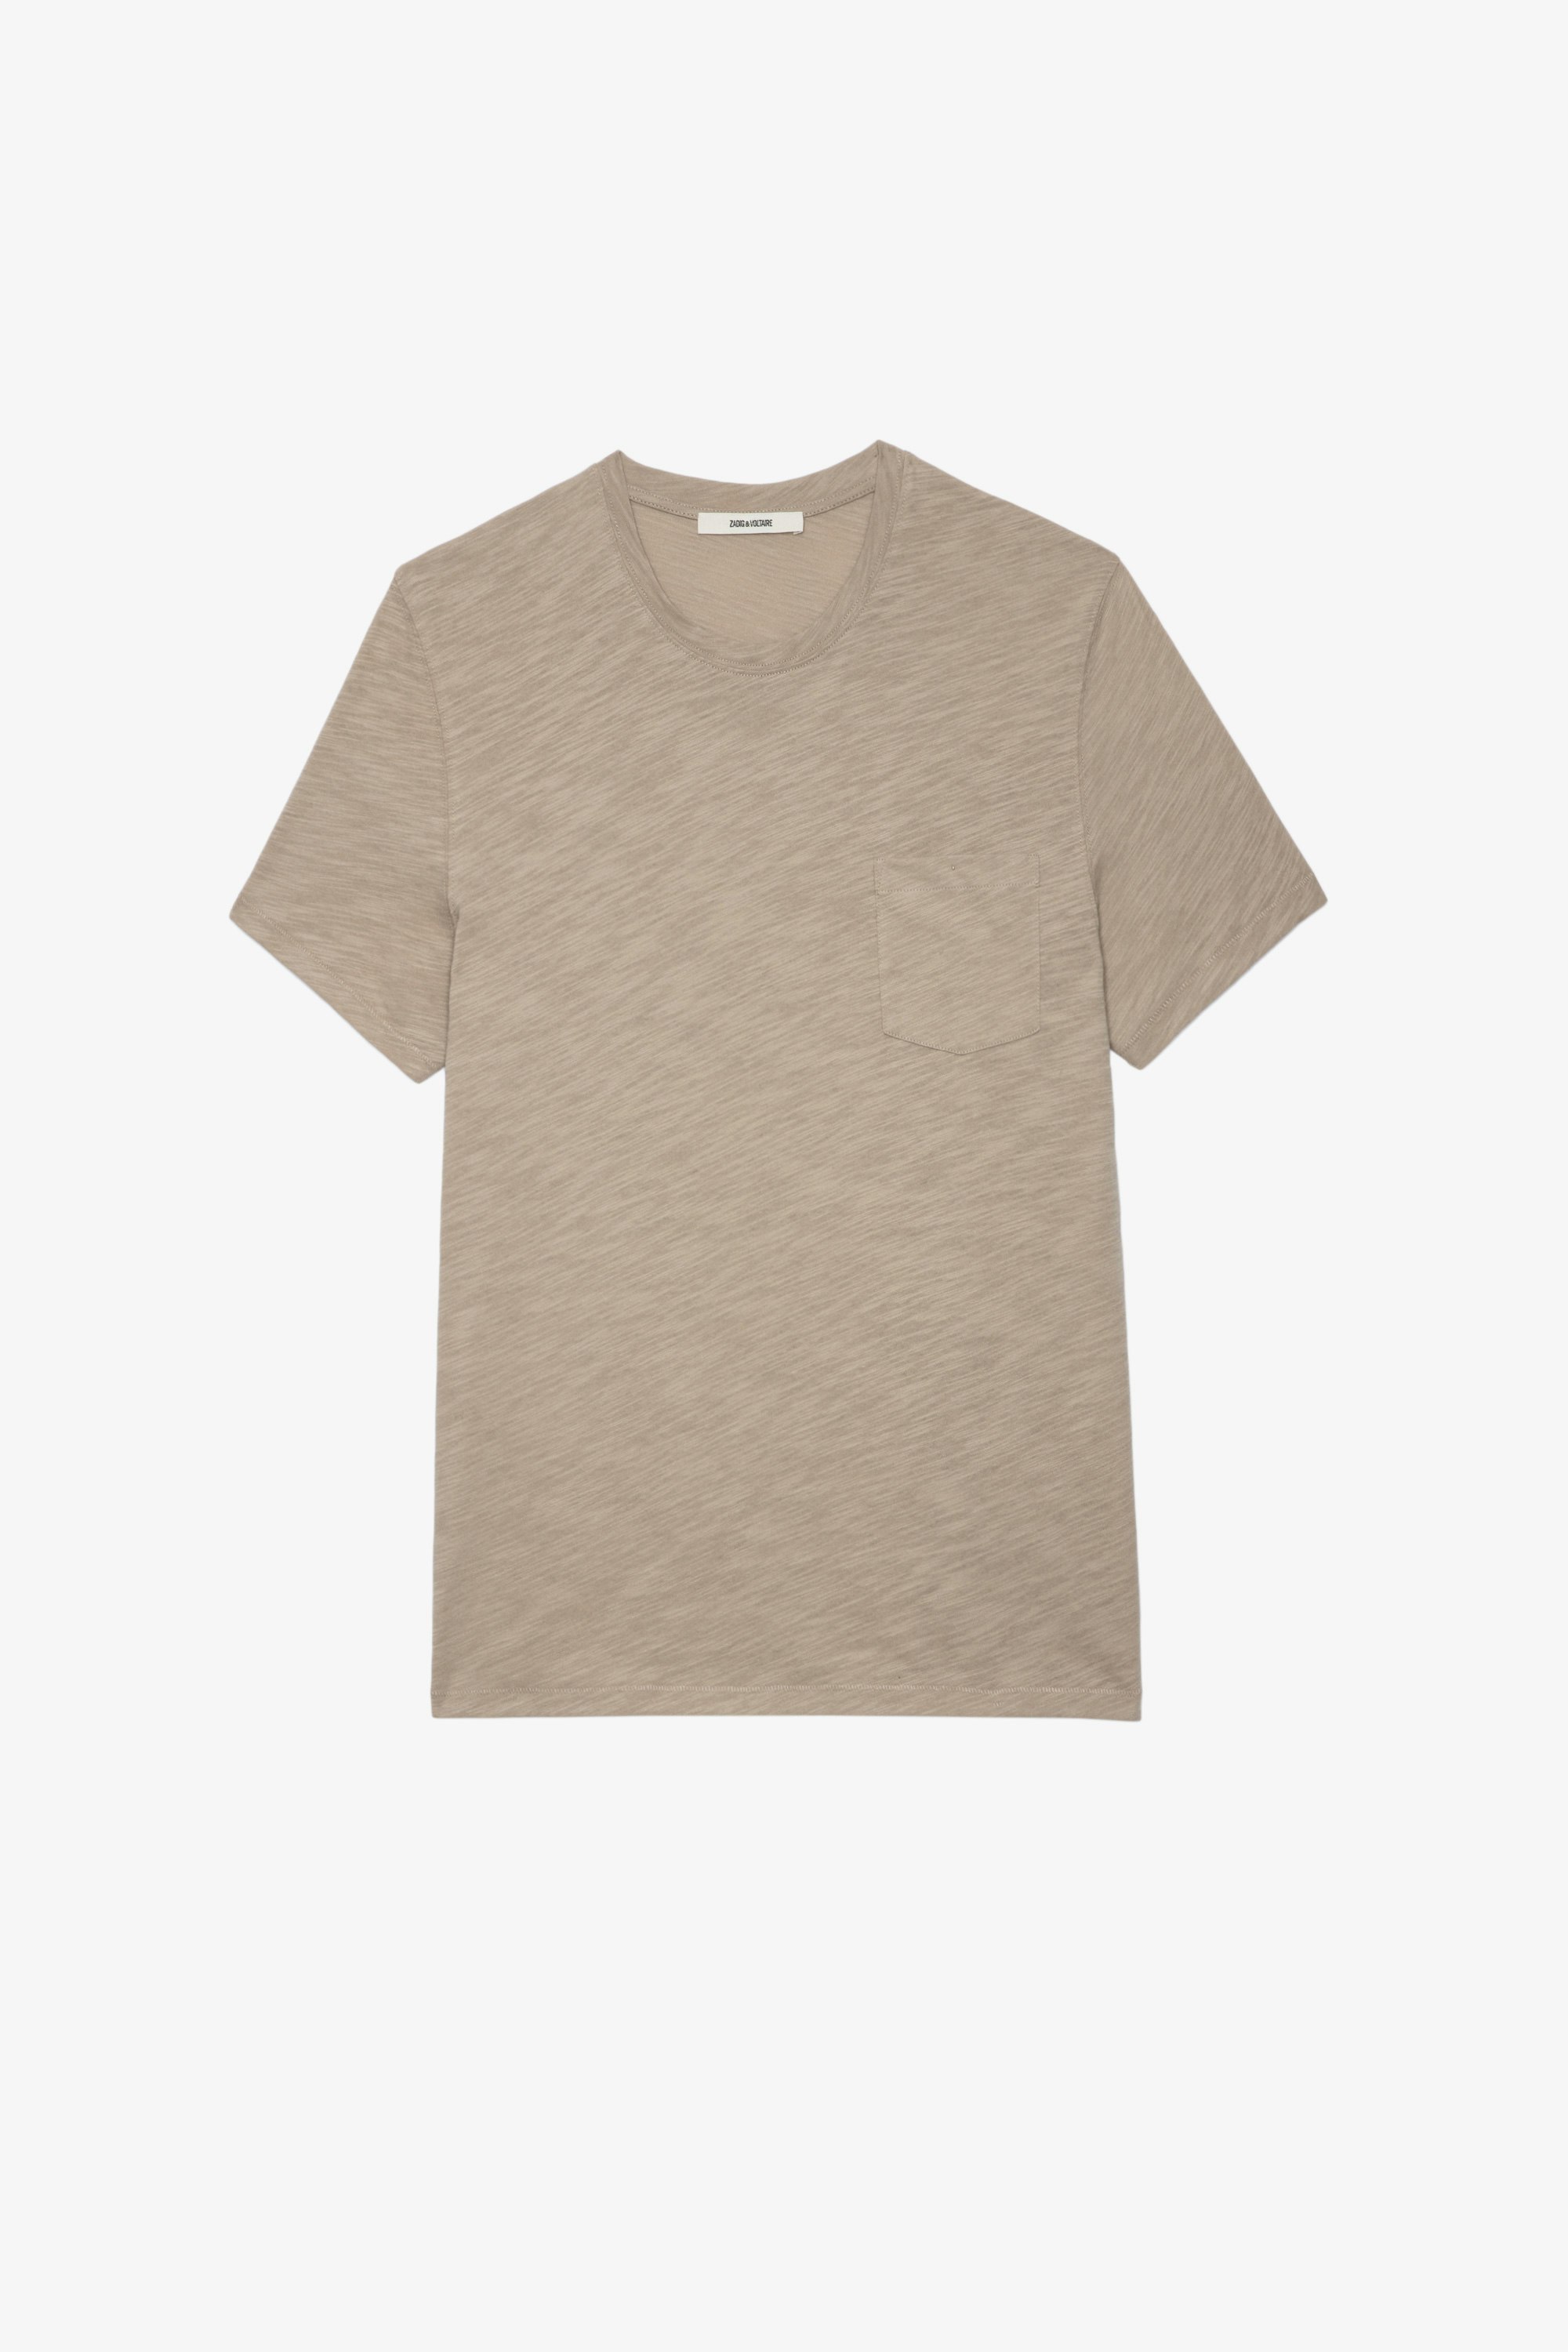 T-Shirt Stockholm Geflammt undefined